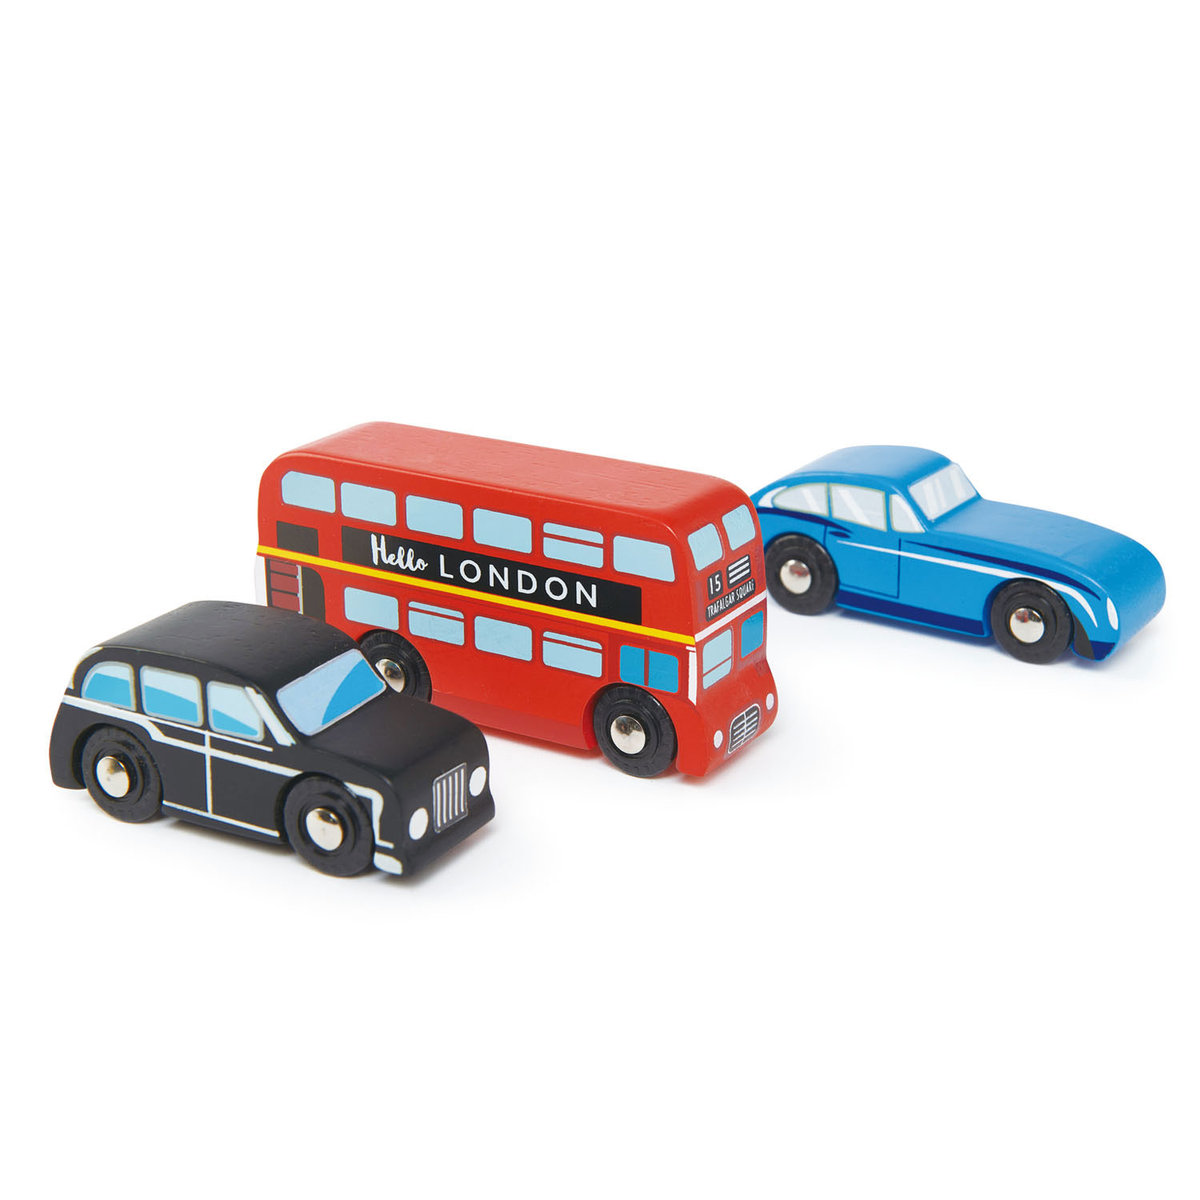 Tender Leaf Toys tender leaf toys - Drewniany Zestaw Samochodów  -  Londyn, 3 Sztuki, Tender Leaf Toys